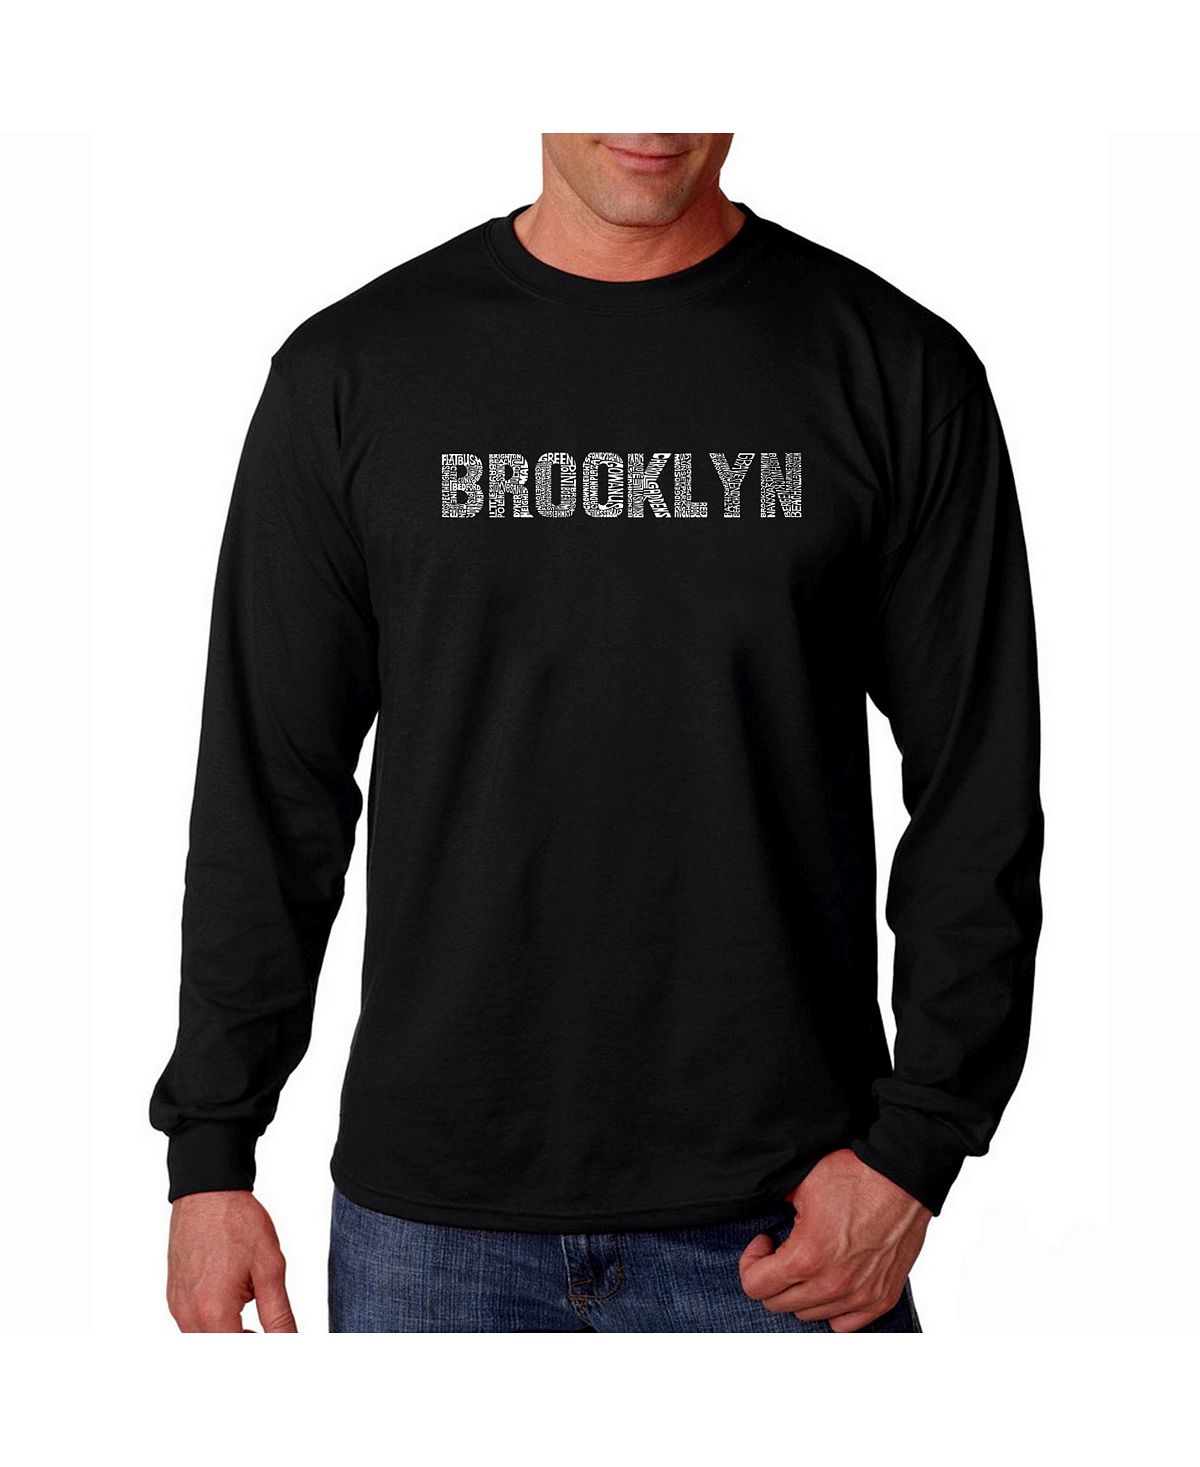 Мужская футболка с длинным рукавом word art - brooklyn neighborhoods LA Pop Art, черный boston neighborhoods мужская футболка с длинным рукавом с надписью word art la pop art